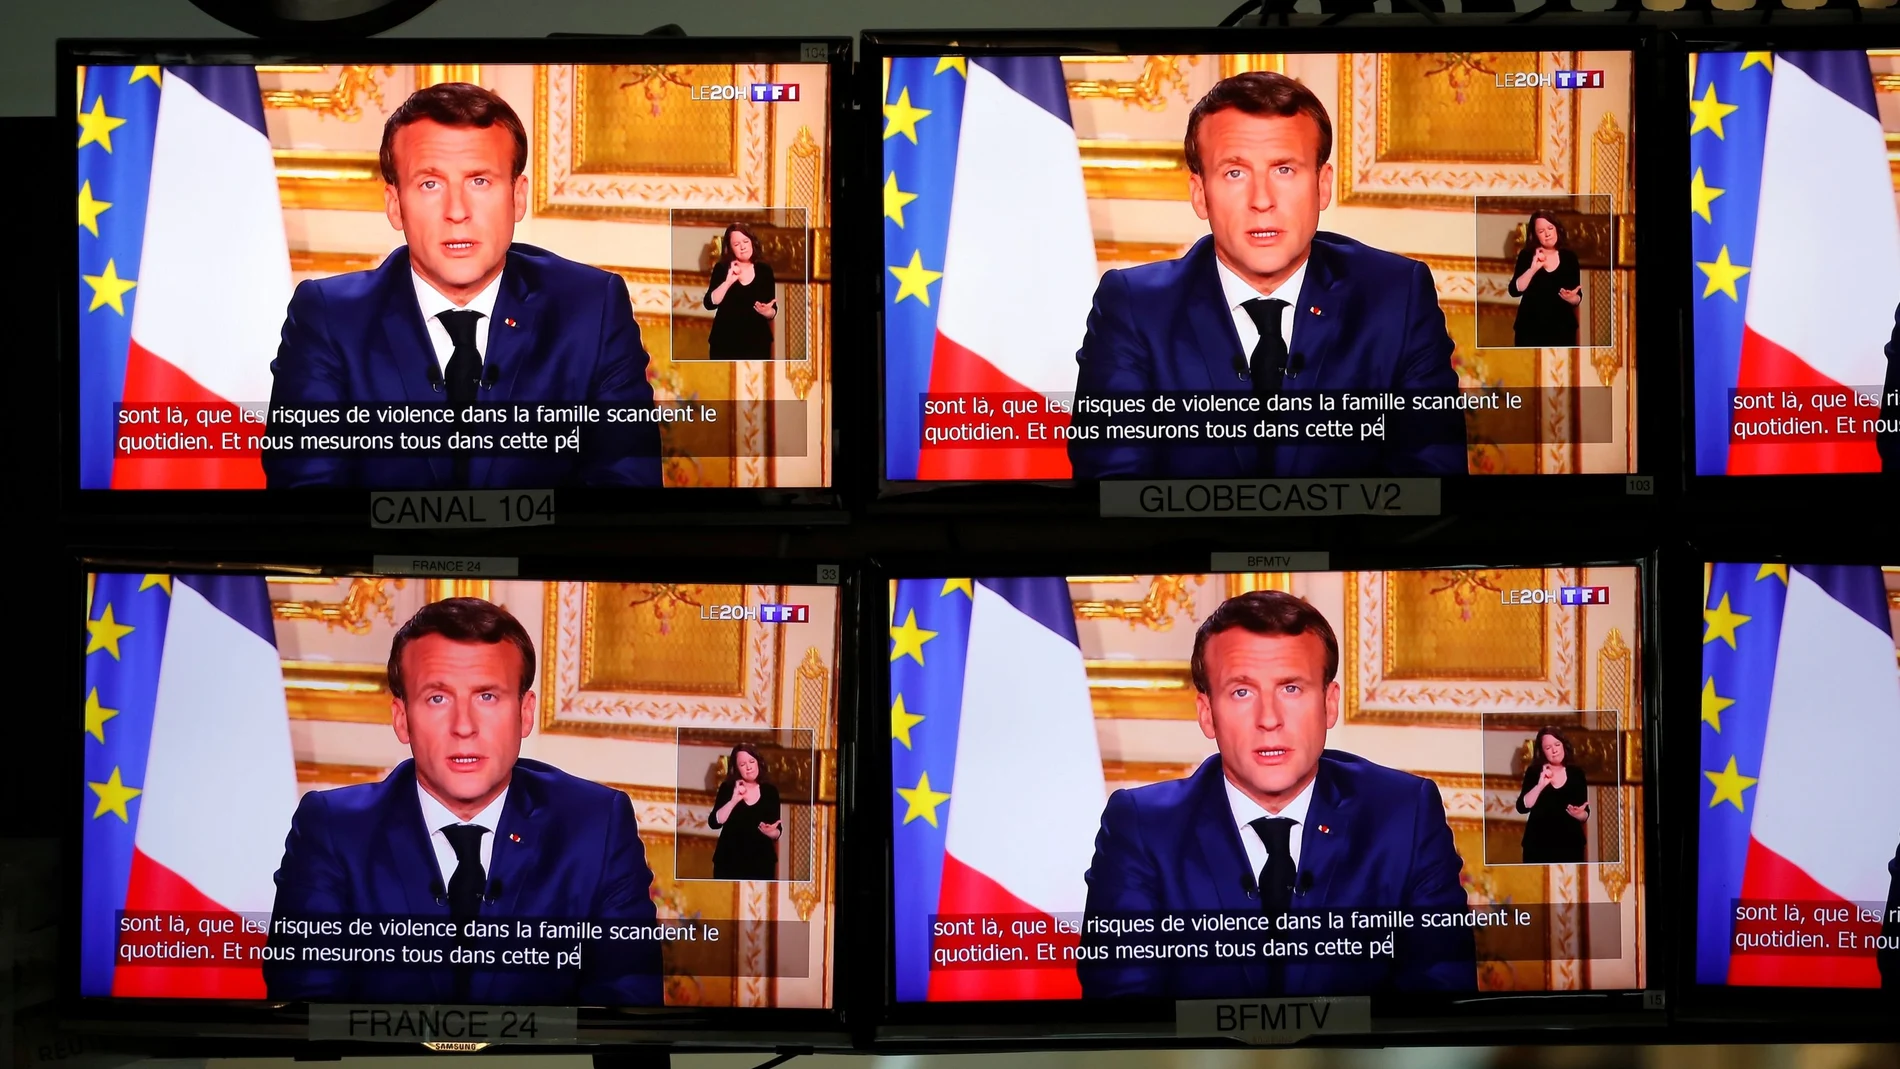 El presidente francés Emmanuel Macron, visto en varios televisores durante su mensaje a la nación esta tarde en Francia